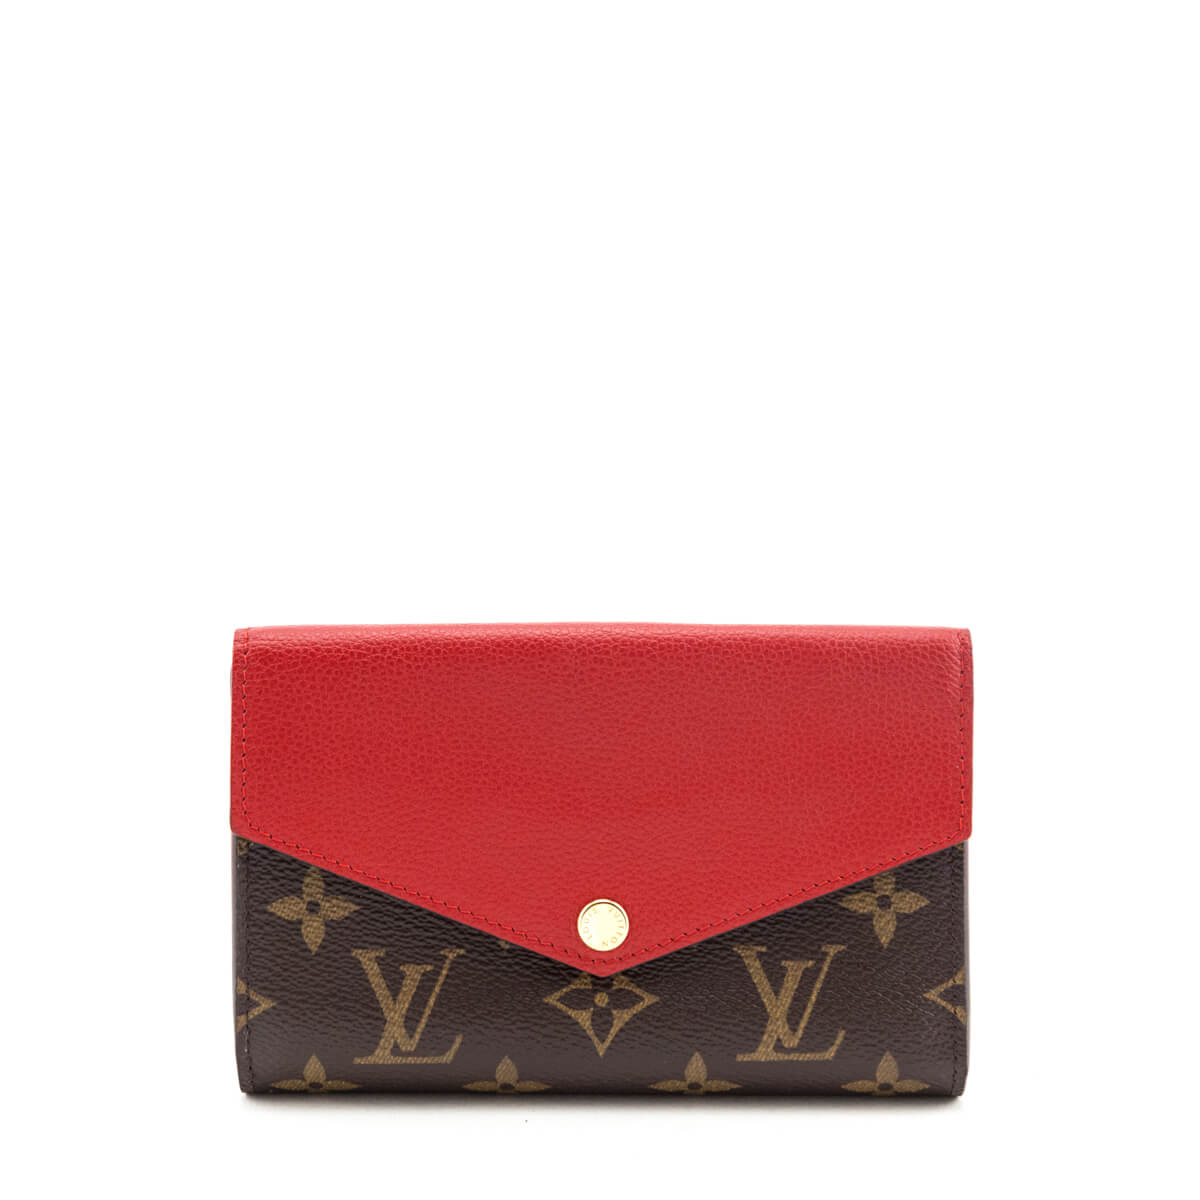 Louis Vuitton Compact Wallet Pallas Monogram (12 Card Slot) Cerise